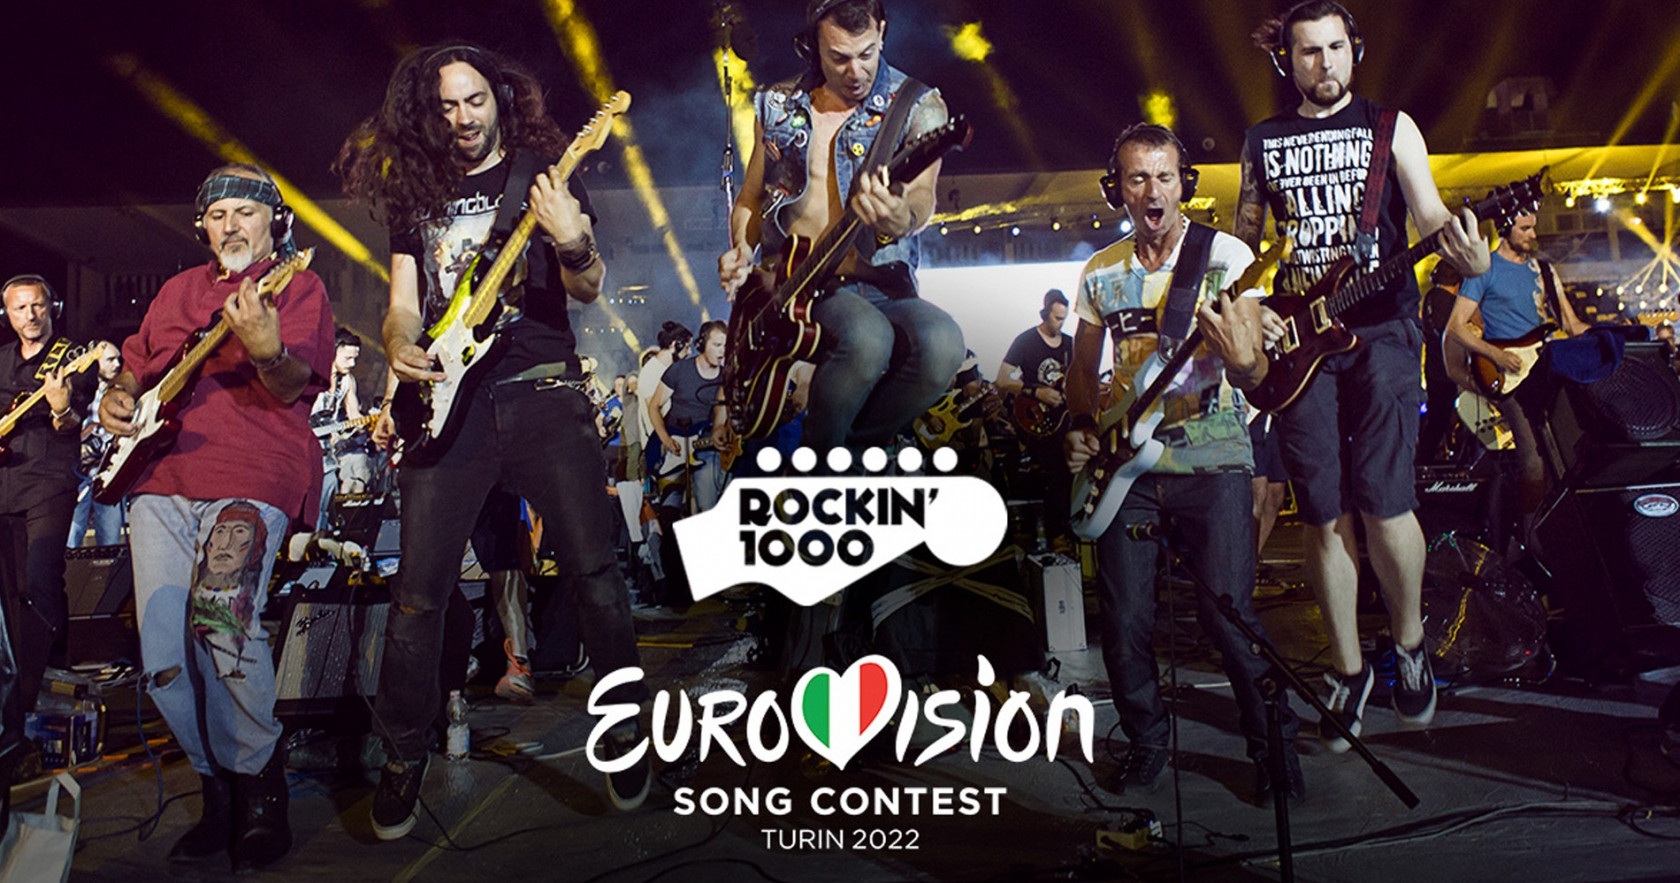 Οι Rockin’ 1000 έρχονται στην Eurovision 2022!